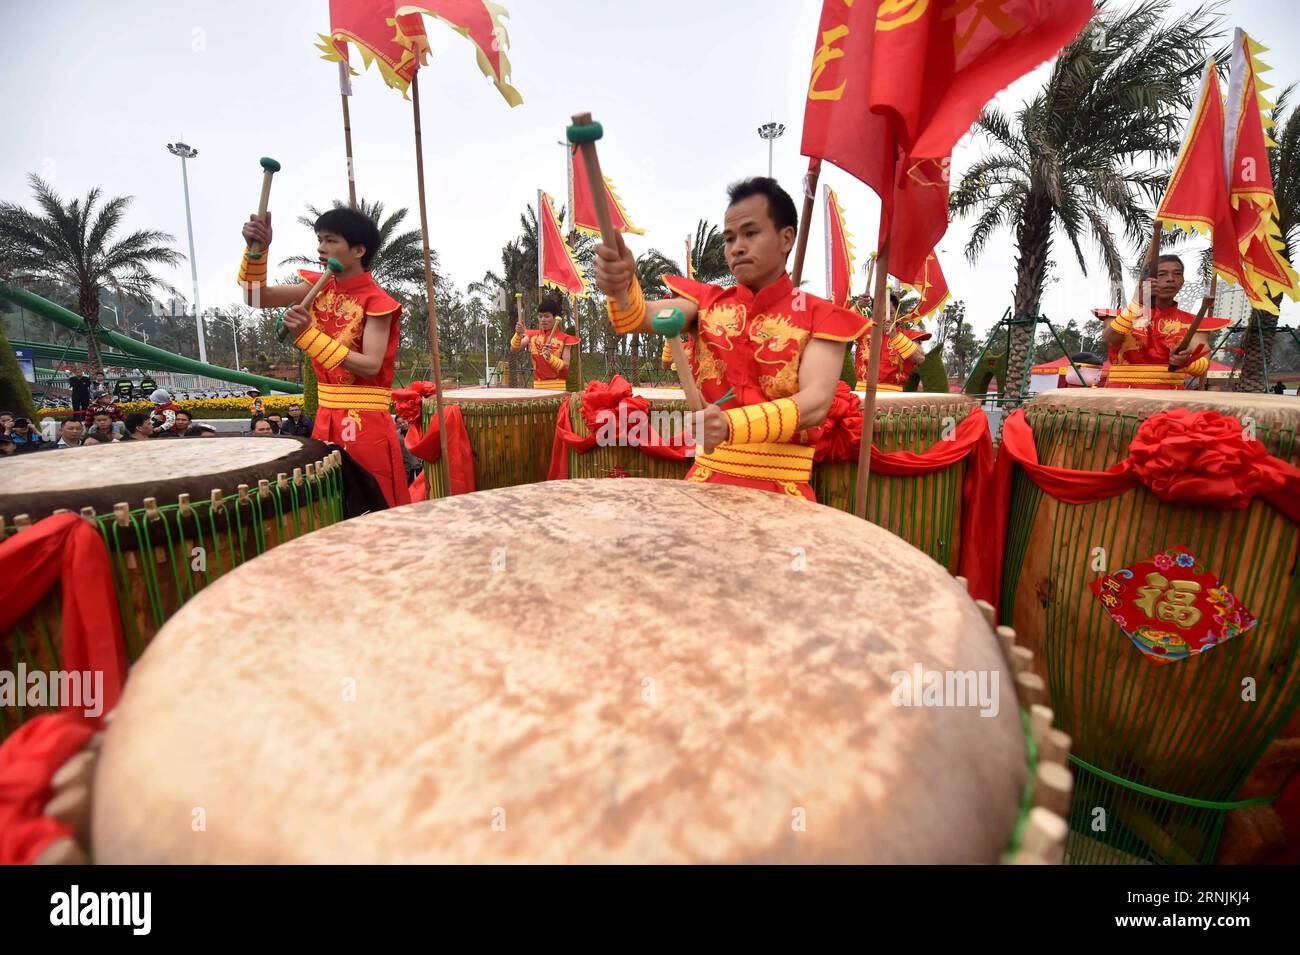 (170202) -- QINZHOU, 2 février 2017 -- les concurrents battent des tambours lors d'une compétition de tambours organisée pour célébrer le Festival du Printemps chinois à Qinzhou, dans la région autonome de Guangxi Zhuang du sud de la Chine, le 2 février 2017.) (wyl) CHINA-GUANGXI-SPRING FESTIVAL-CELEBRATION (CN) ZhangxAilin PUBLICATIONxNOTxINxCHN Qinzhou Feb 2 2017 concurrents battent des tambours lors d'une compétition de tambour héros pour célébrer le Festival de printemps chinois à Qinzhou Sud Chine S Guangxi Zhuang région autonome février 2 2017 wyl Chine Guangxi Spring Festival Celebration CN ZhangxAilin PUBLICATIONxNOxNoxNoxNotin Banque D'Images